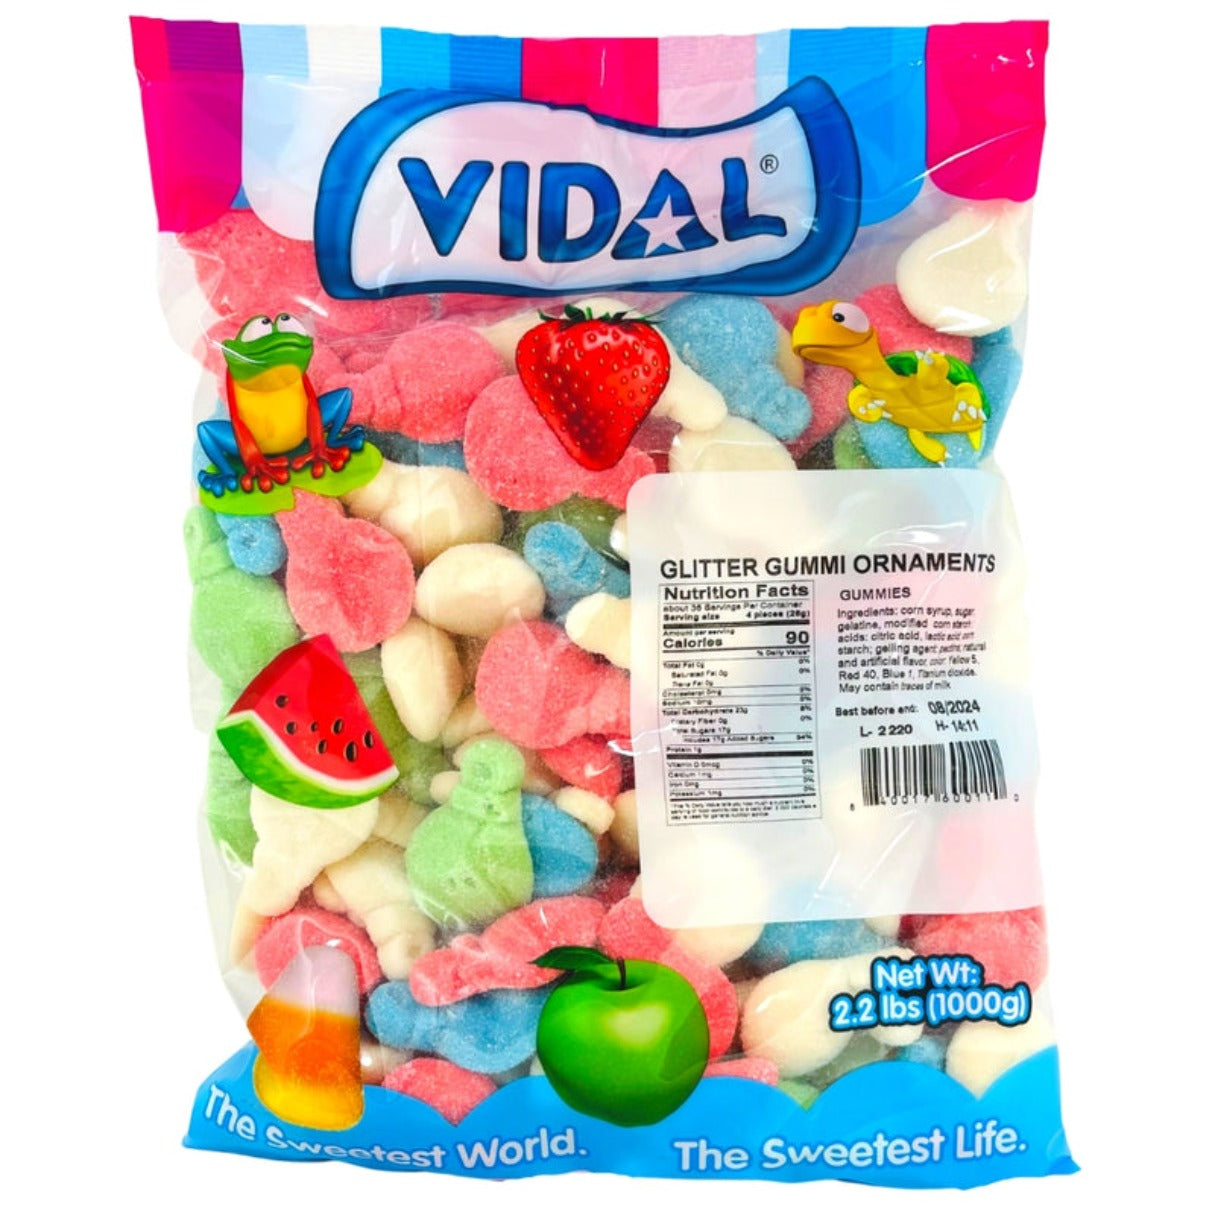 Vidal Gummi Glitter Ornaments Bulk Bag 2.2lb - 1ct